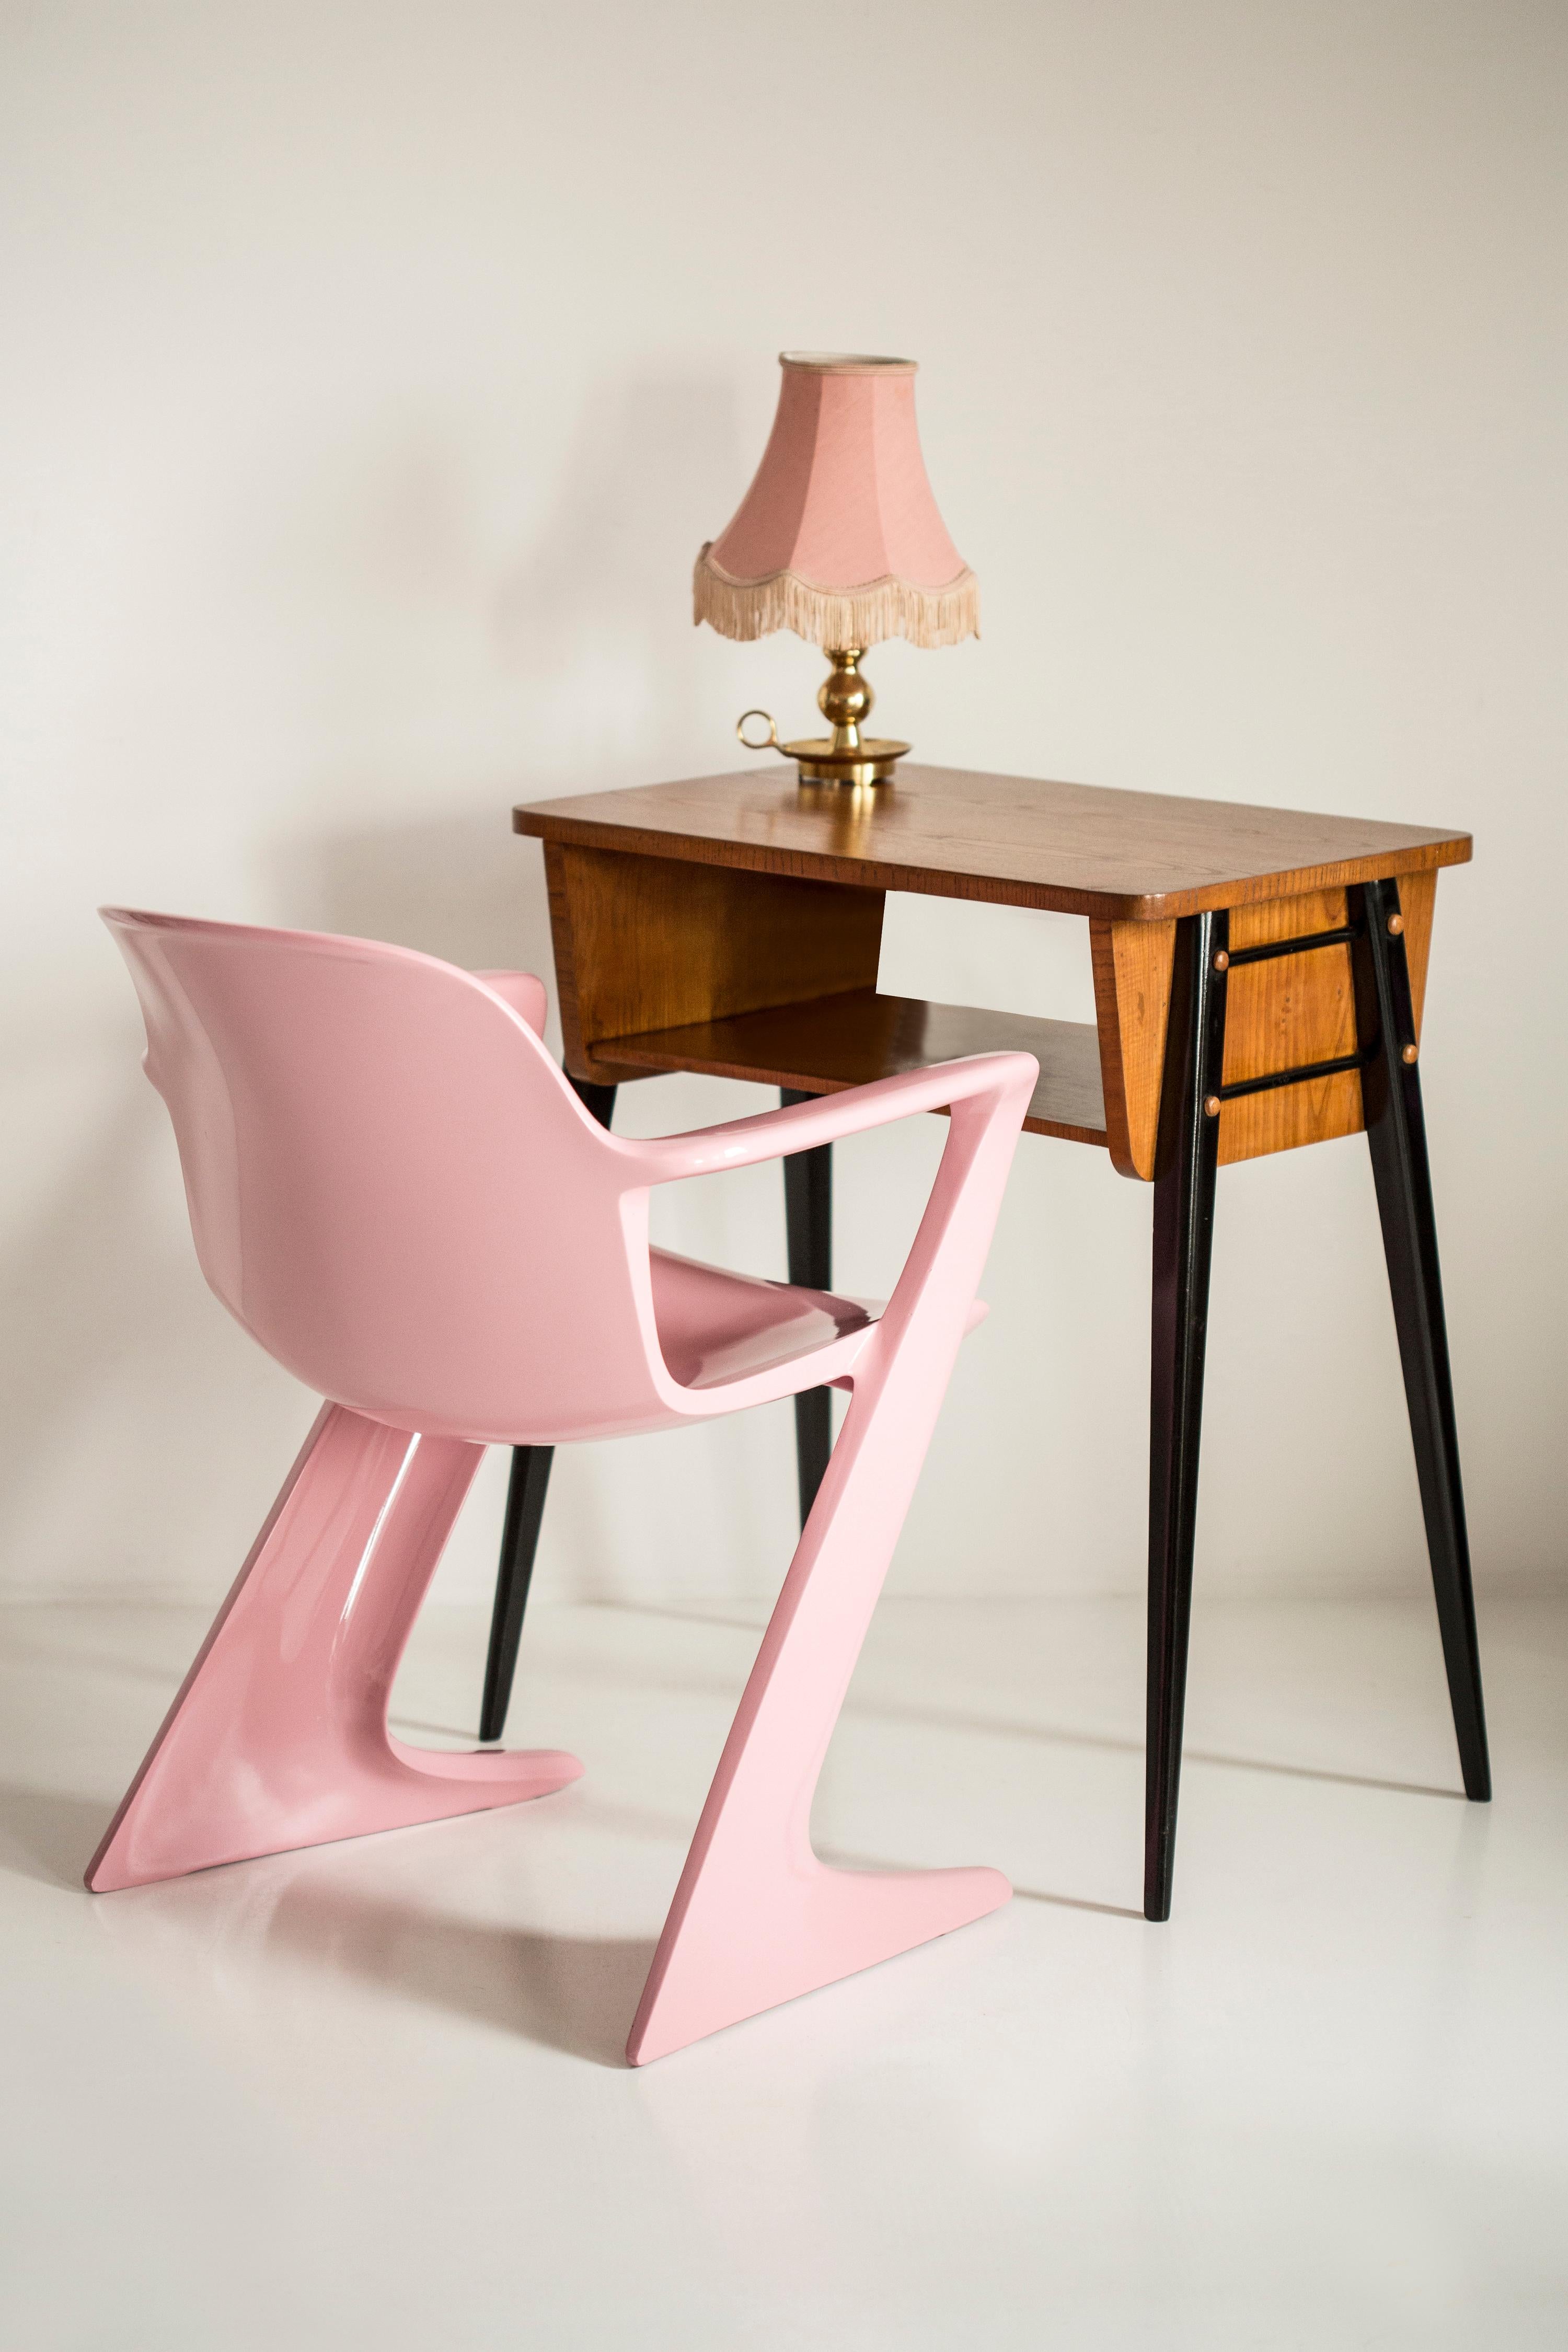 Ce modèle est appelé Z-chair. Conçue en 1968 en RDA par Ernst Moeckl et Siegfried Mehl, version allemande de la chaise Panton. Également appelée chaise kangourou ou chaise variopur. Produit dans l'est de l'Allemagne.

Les chaises sont après